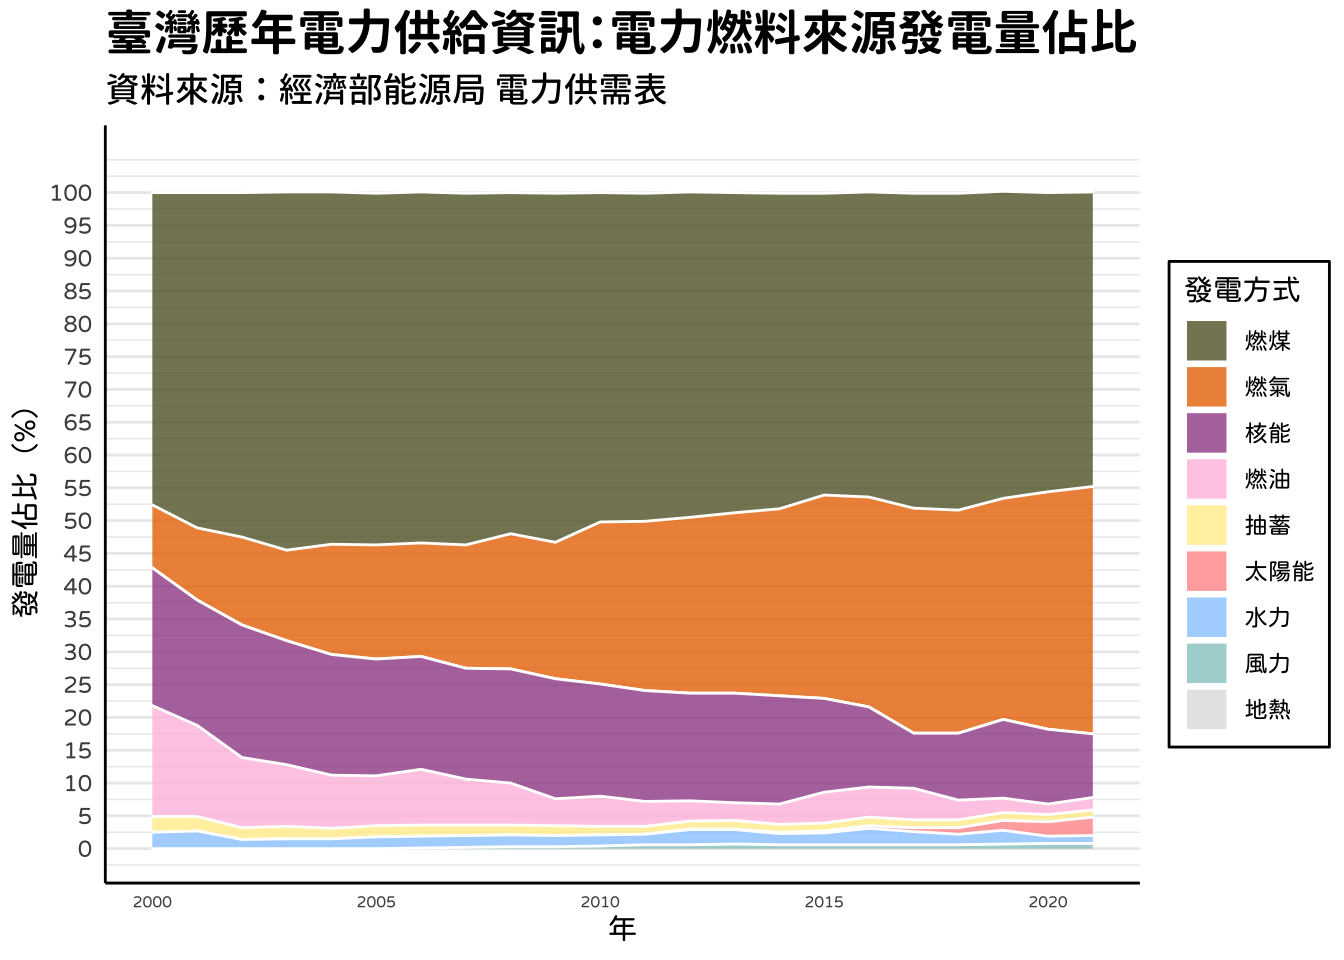 【R語言資料分析】電力資訊視覺化，看歷年來台灣電力結構轉變